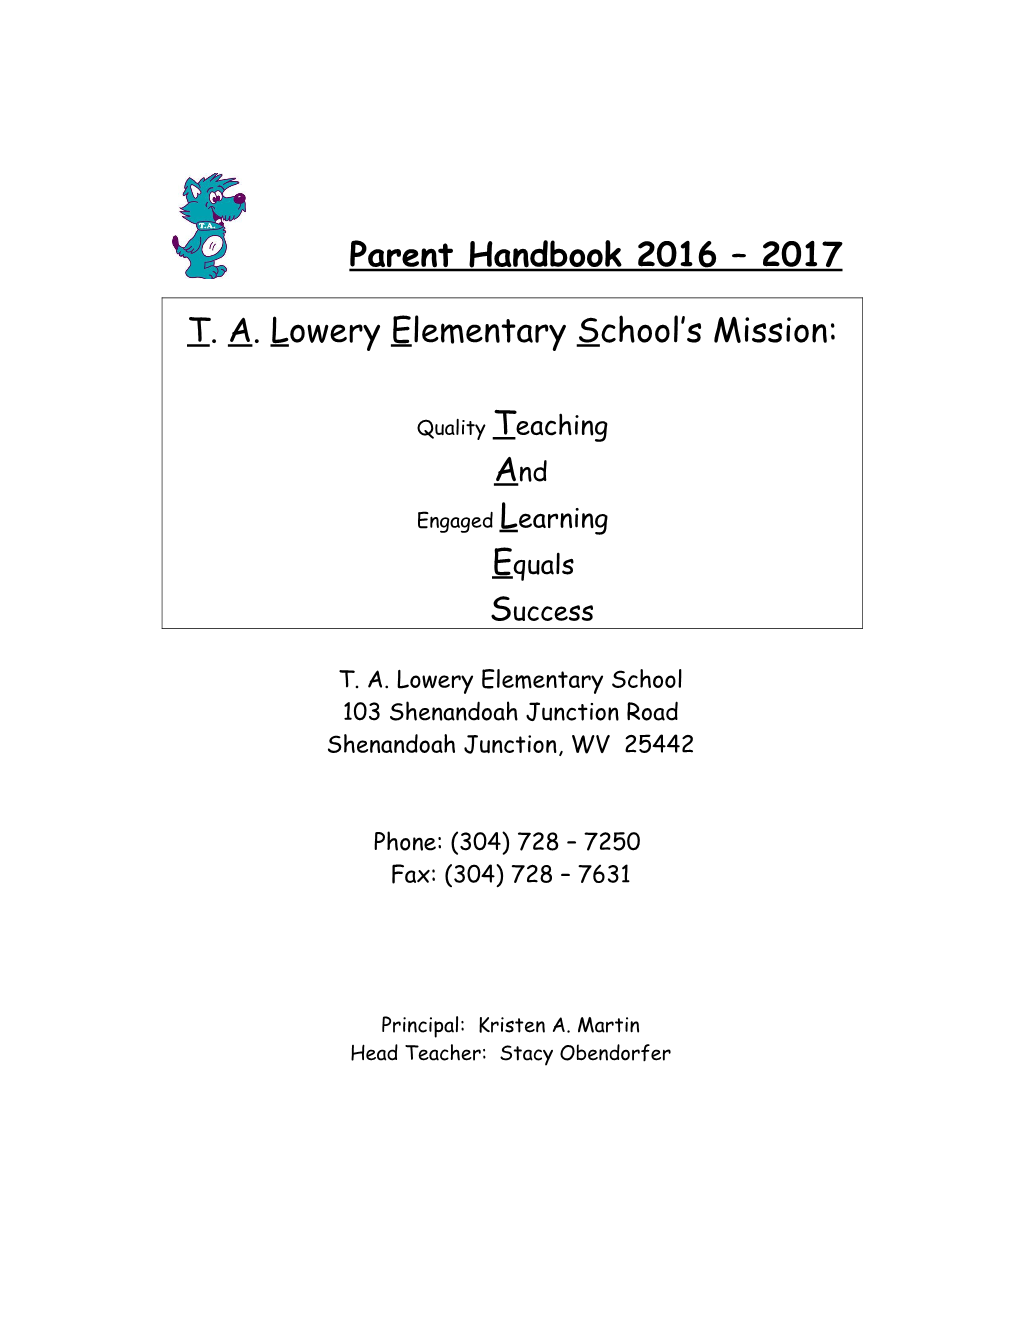 Parent Handbook 2016 2017